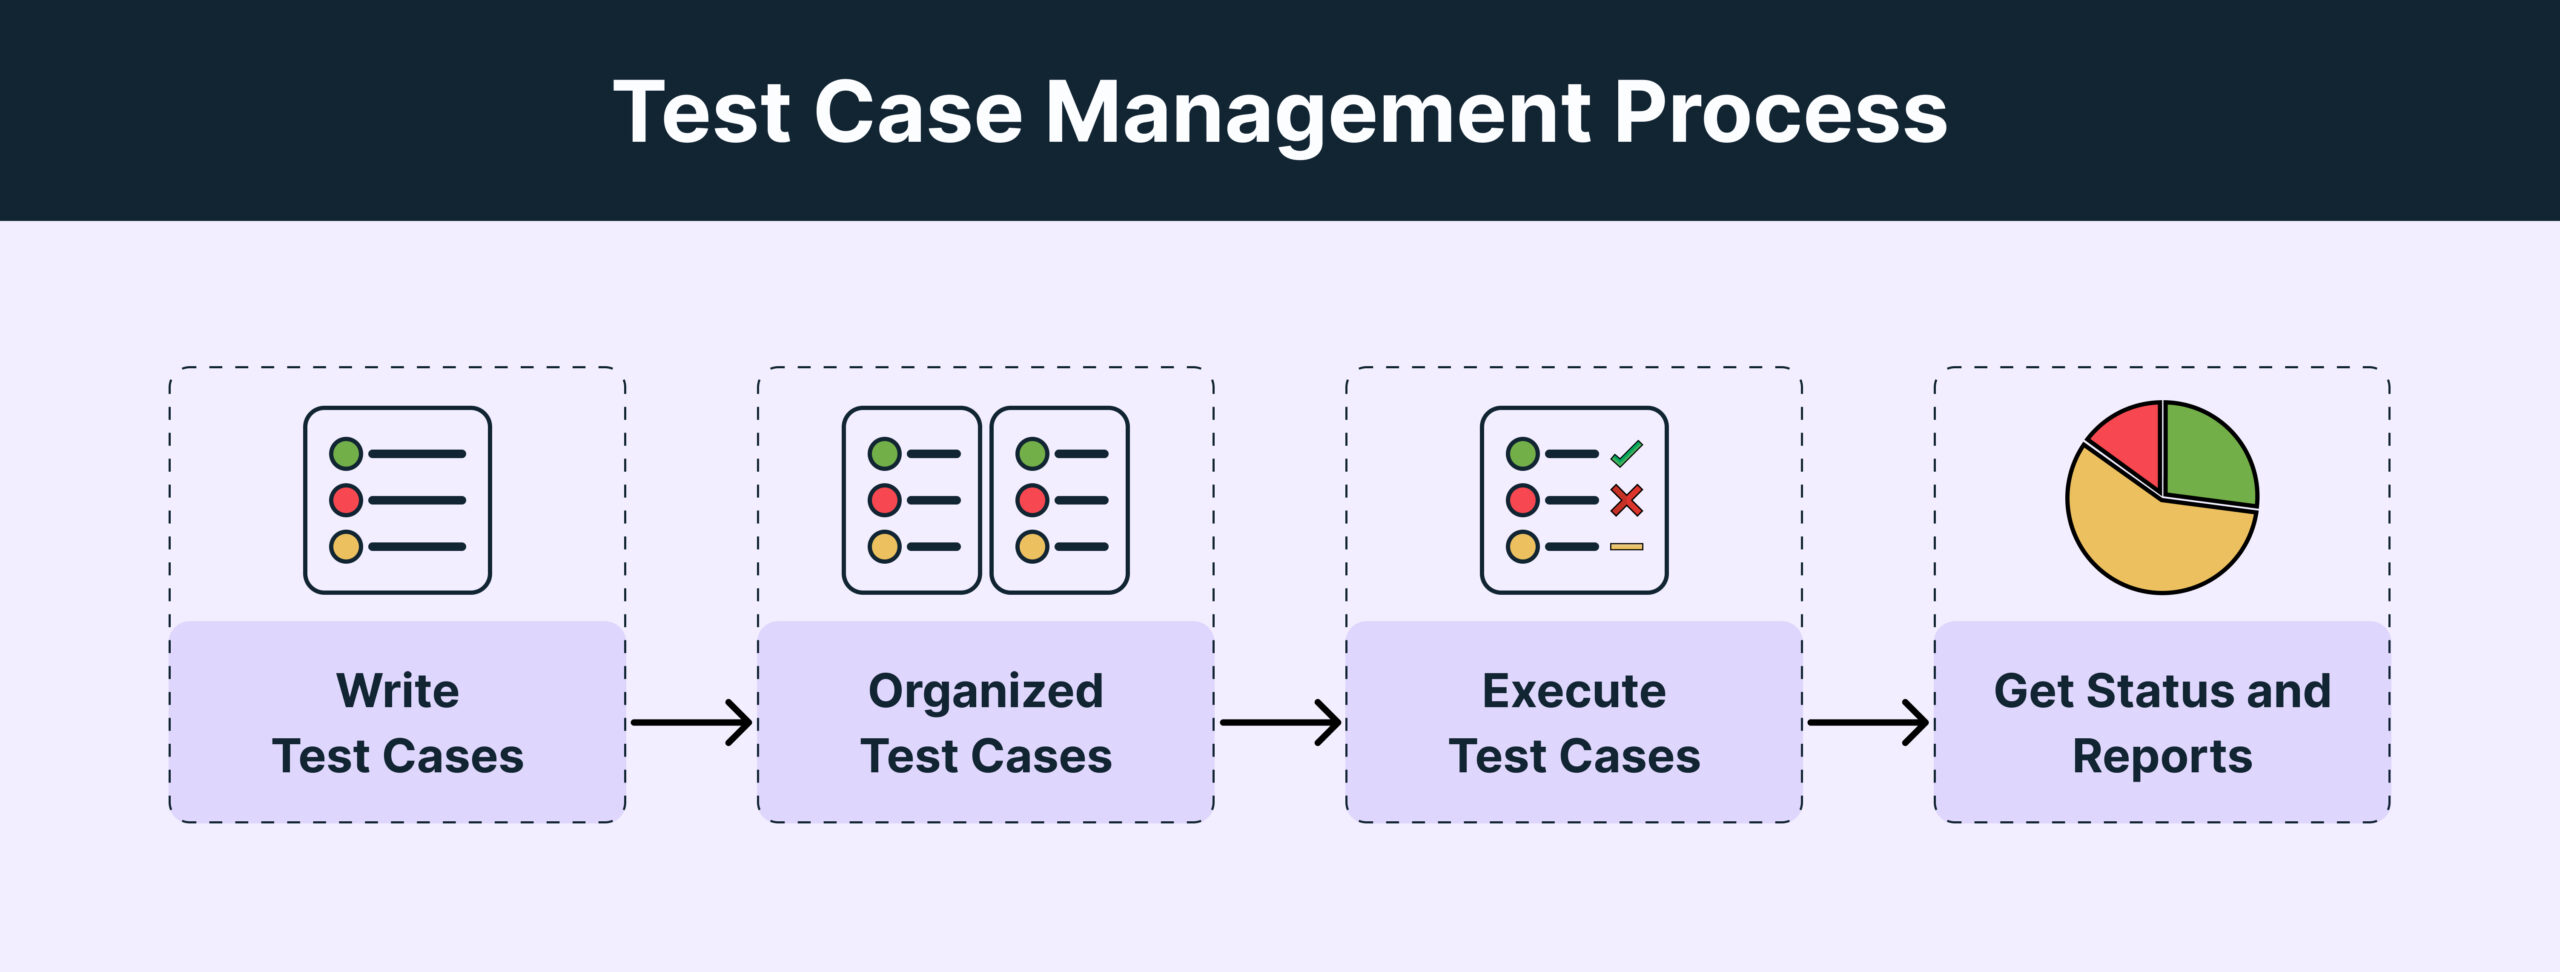 Test Case Management Process